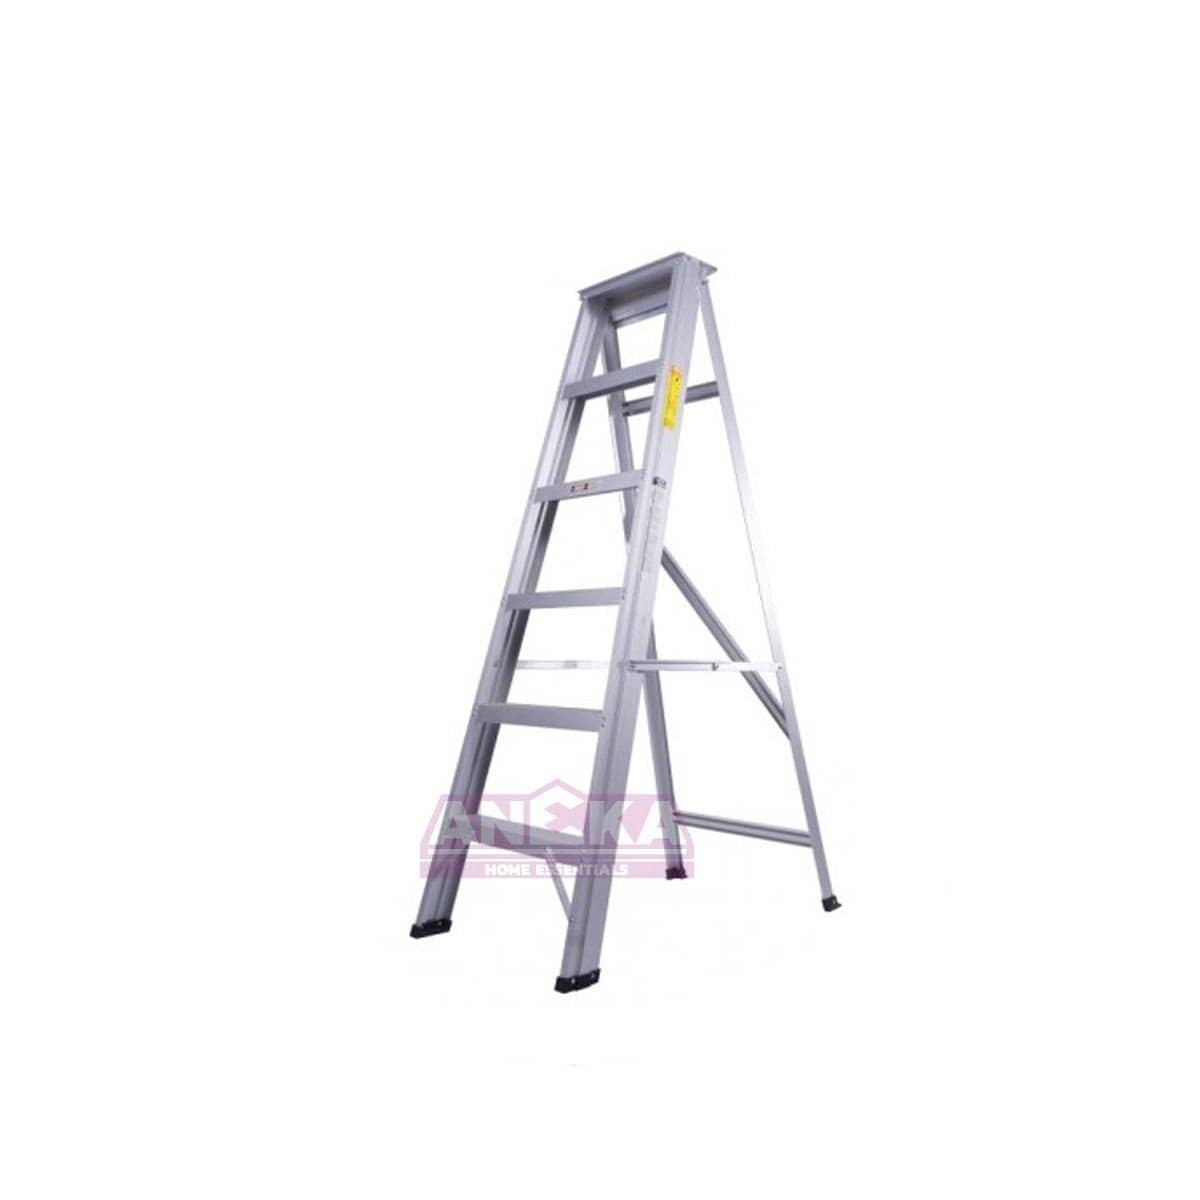 SUMO KING Heavy Duty Single Sided Ladder (4 STEPS)